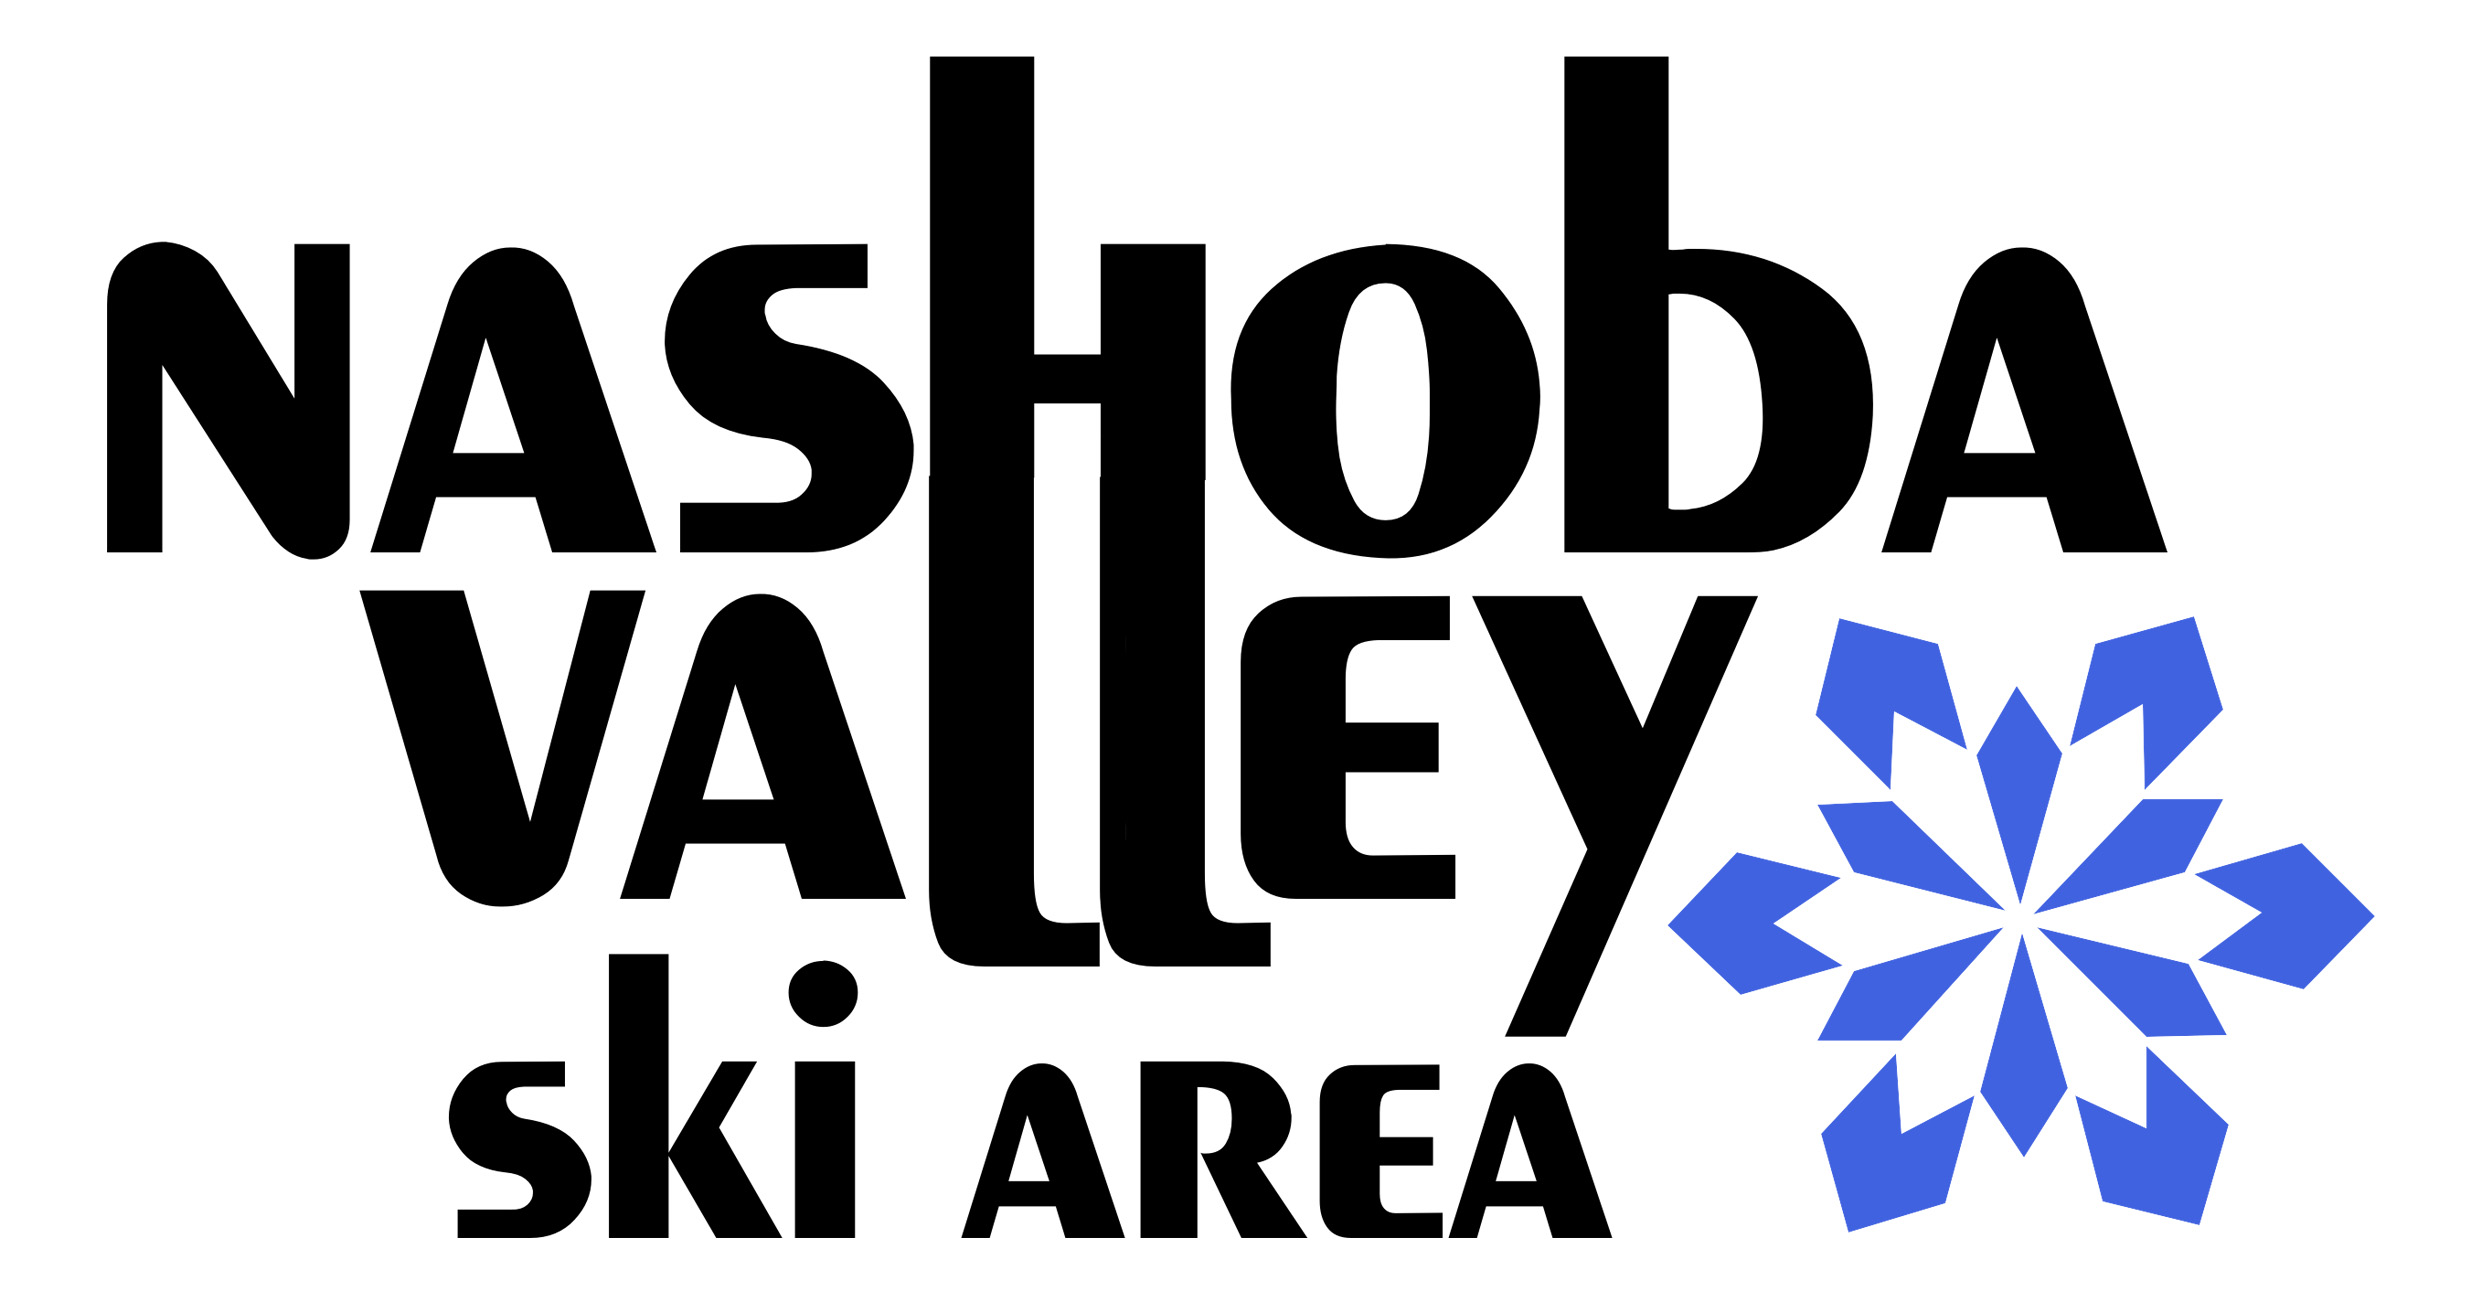 SAM-Nashoba Valley Logo.jpg